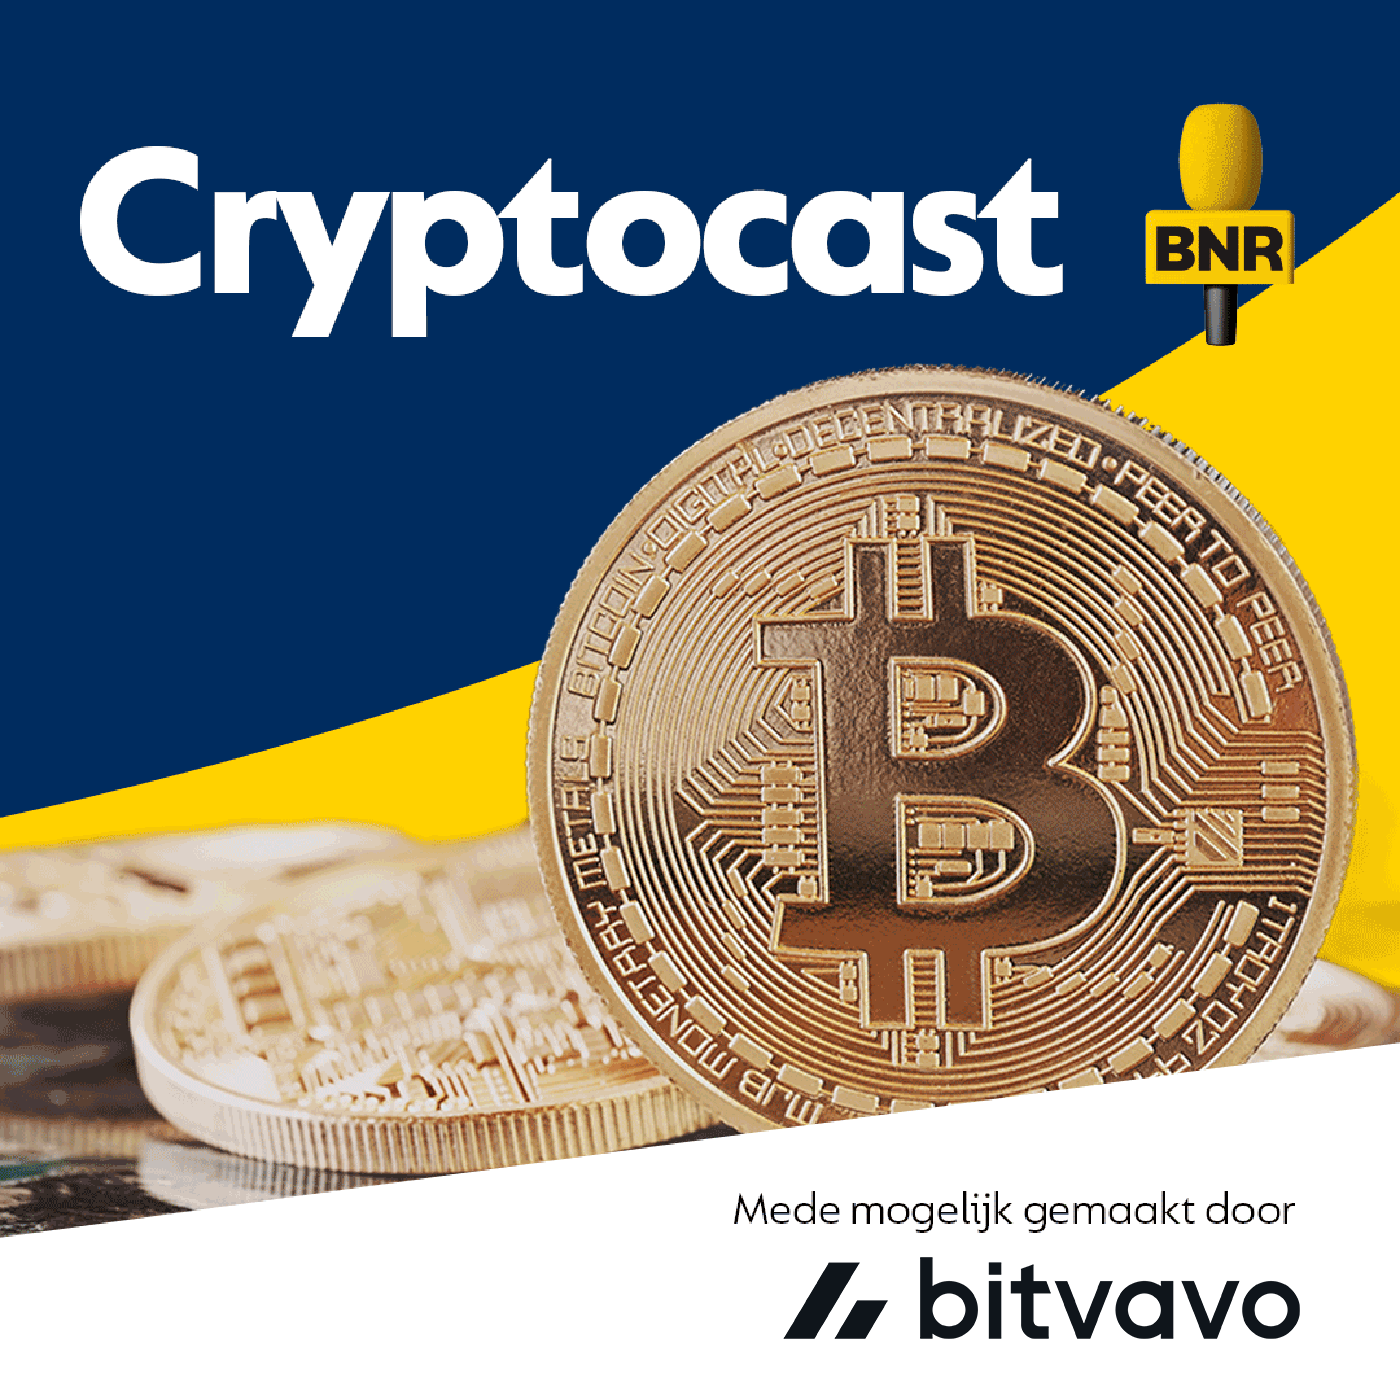 218 B: Hoe kwetsbaar is Bitcoin?